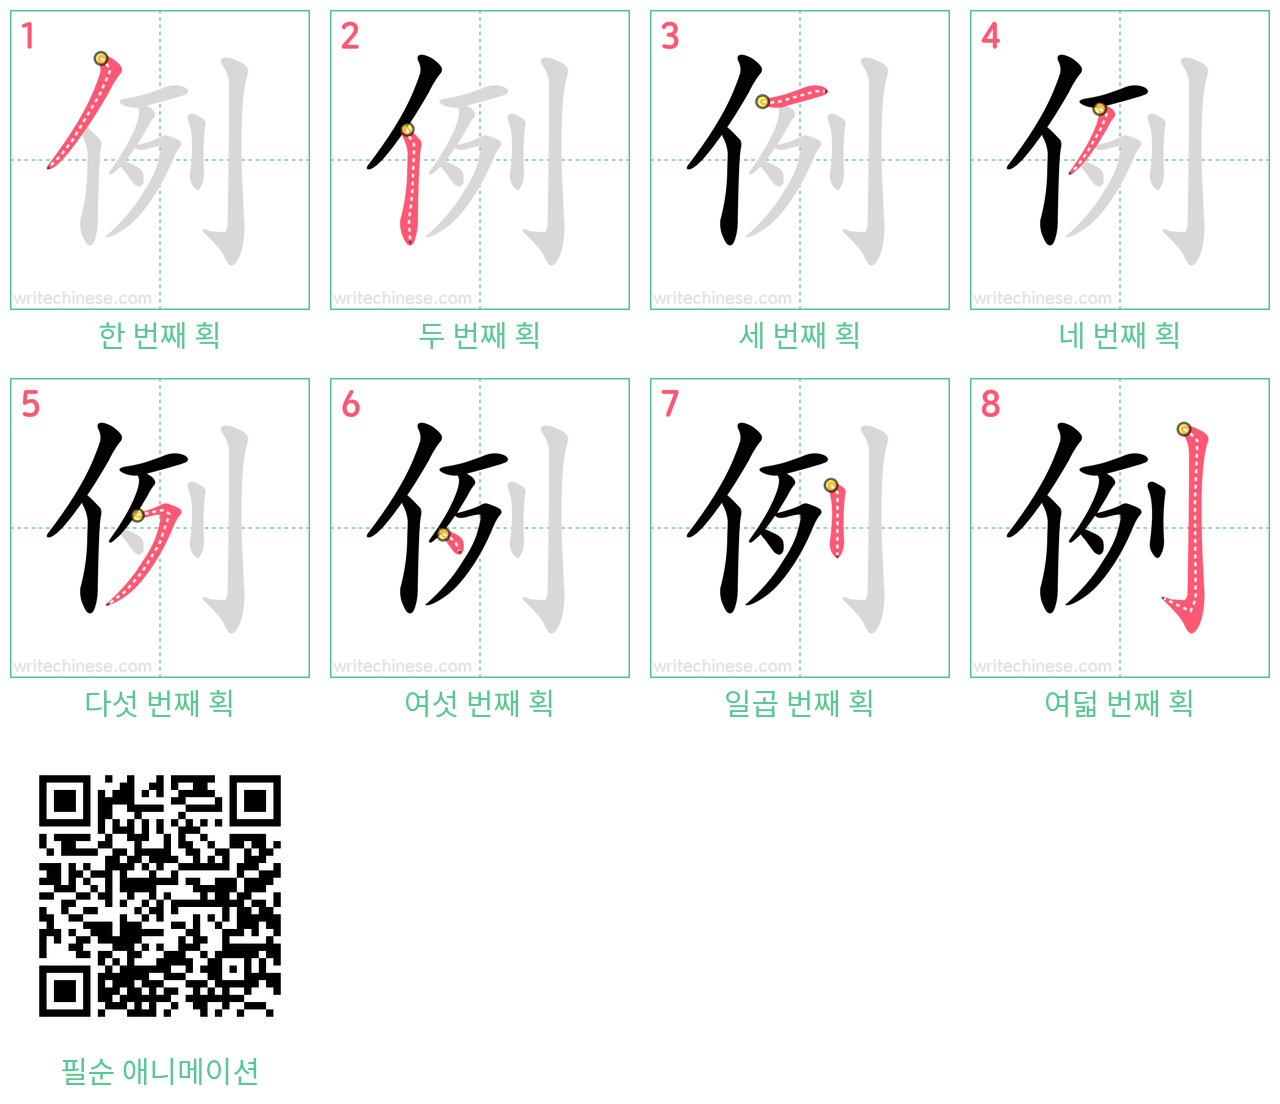 例 step-by-step stroke order diagrams